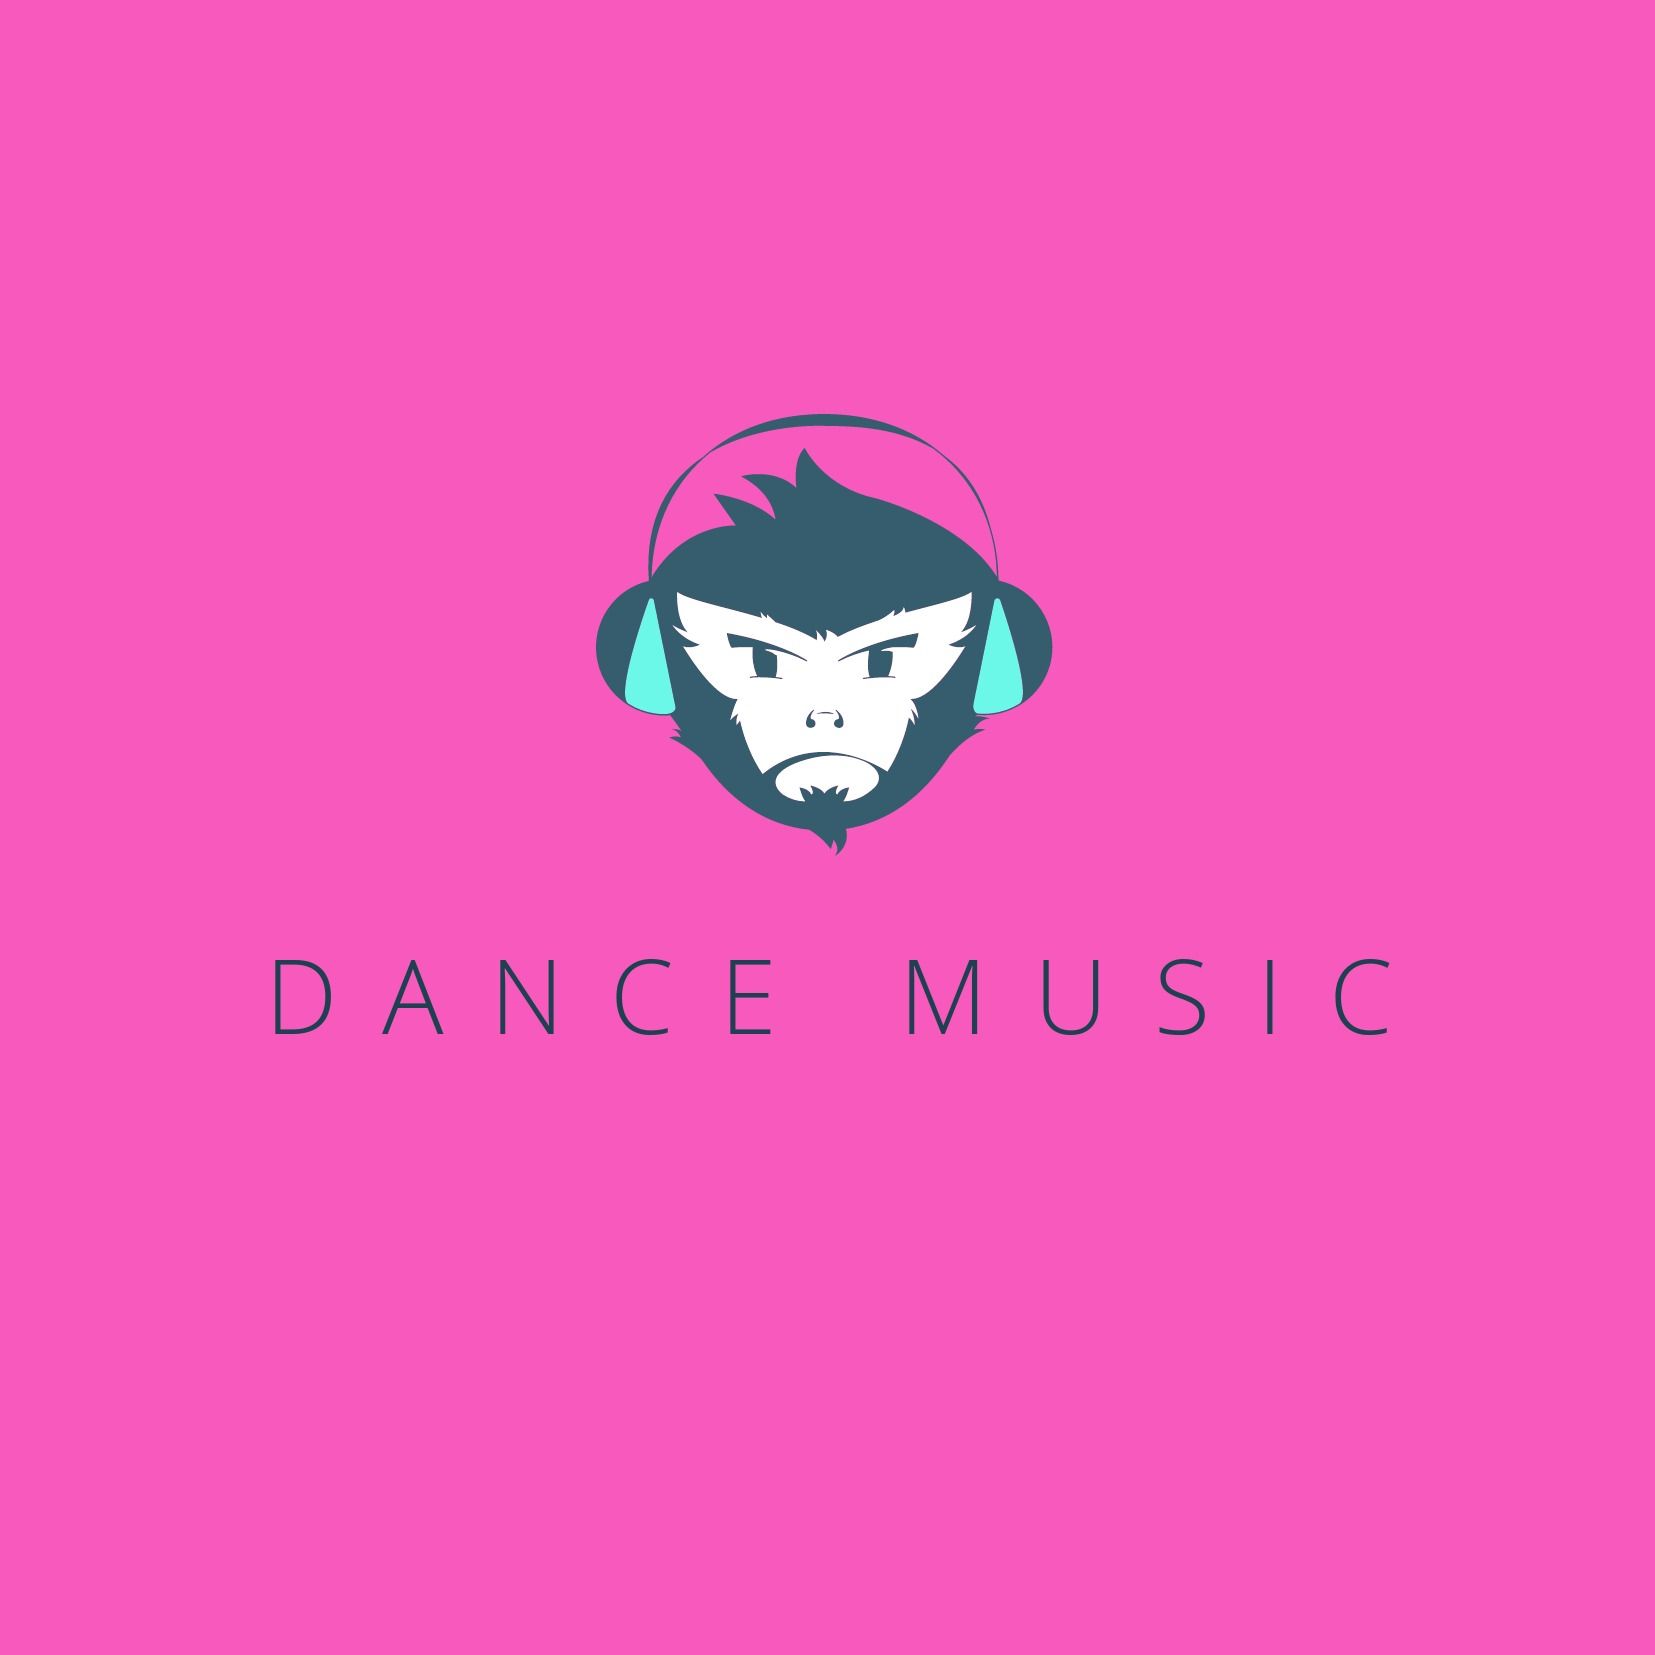 Diseño de logotipo de DJ con mono con auriculares sobre fondo rosa - Khula es una fuente espaciada de manera flexible con soporte hindi - Imagen